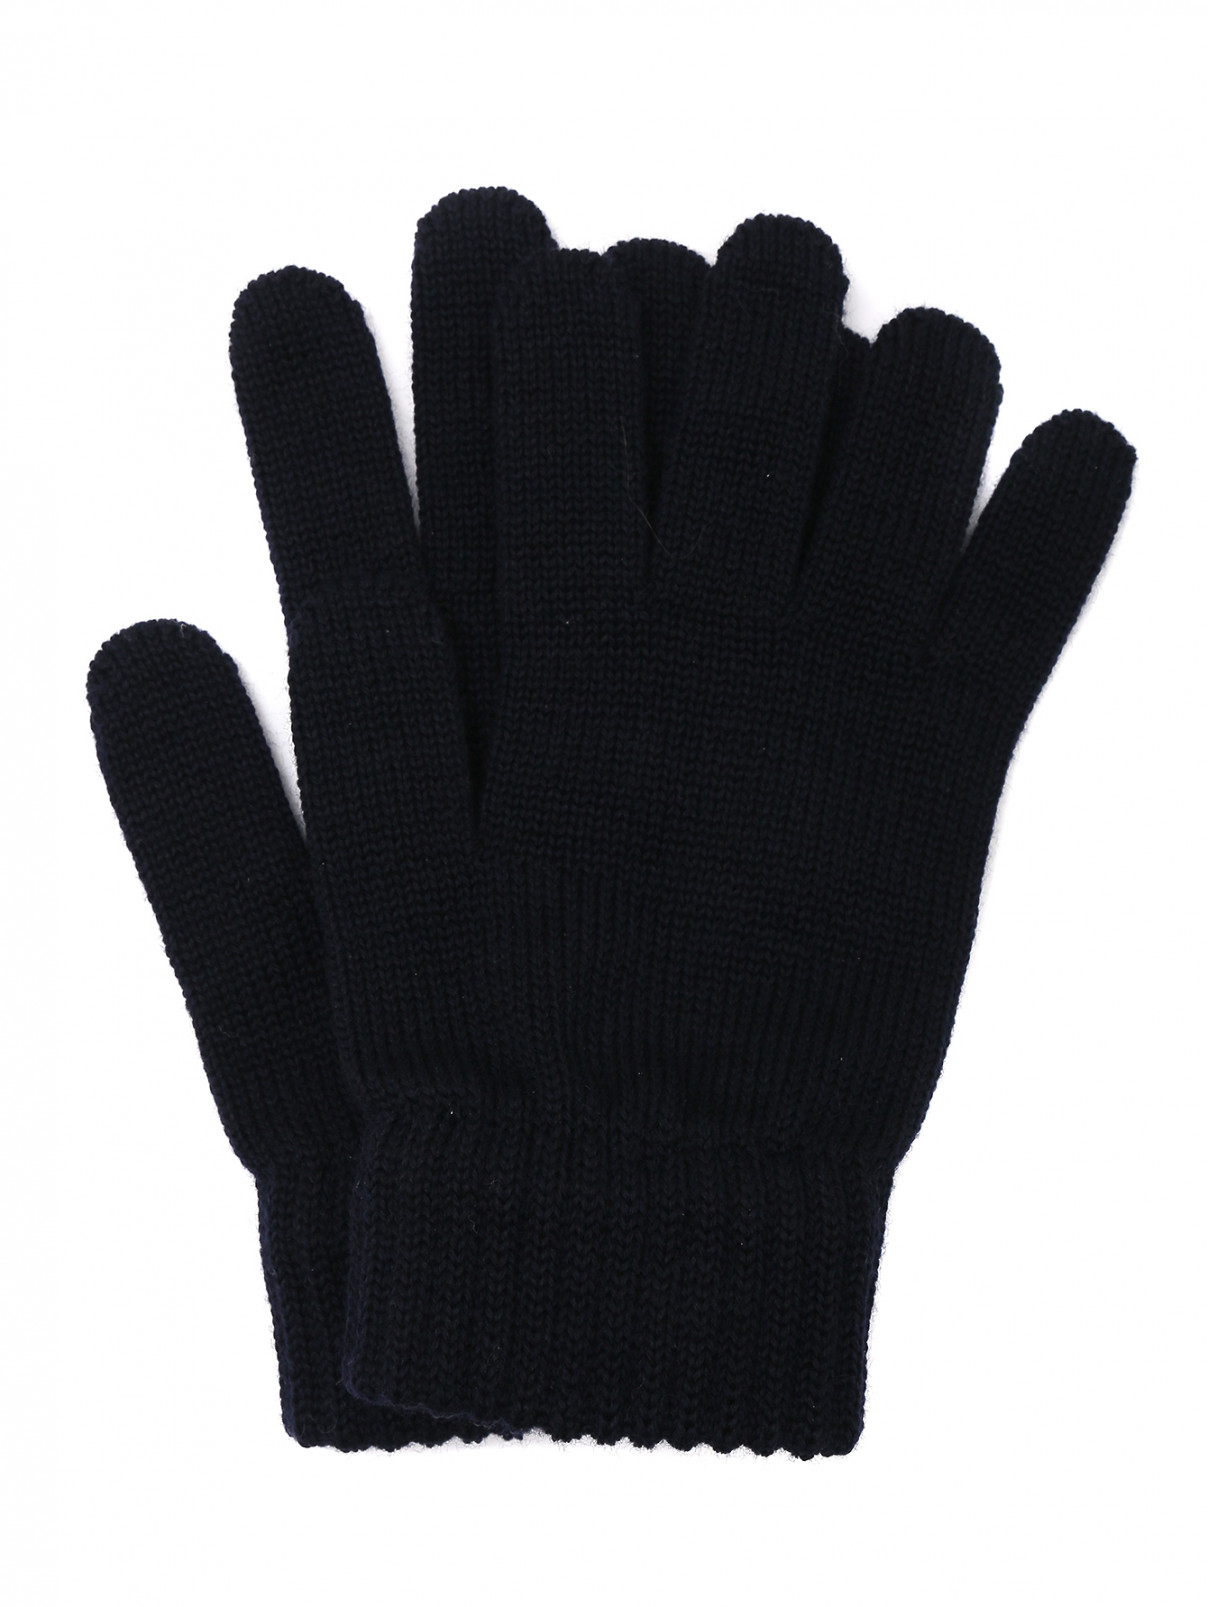 Перчатки из шерсти мелкой вязки Catya  –  Общий вид  – Цвет:  Черный